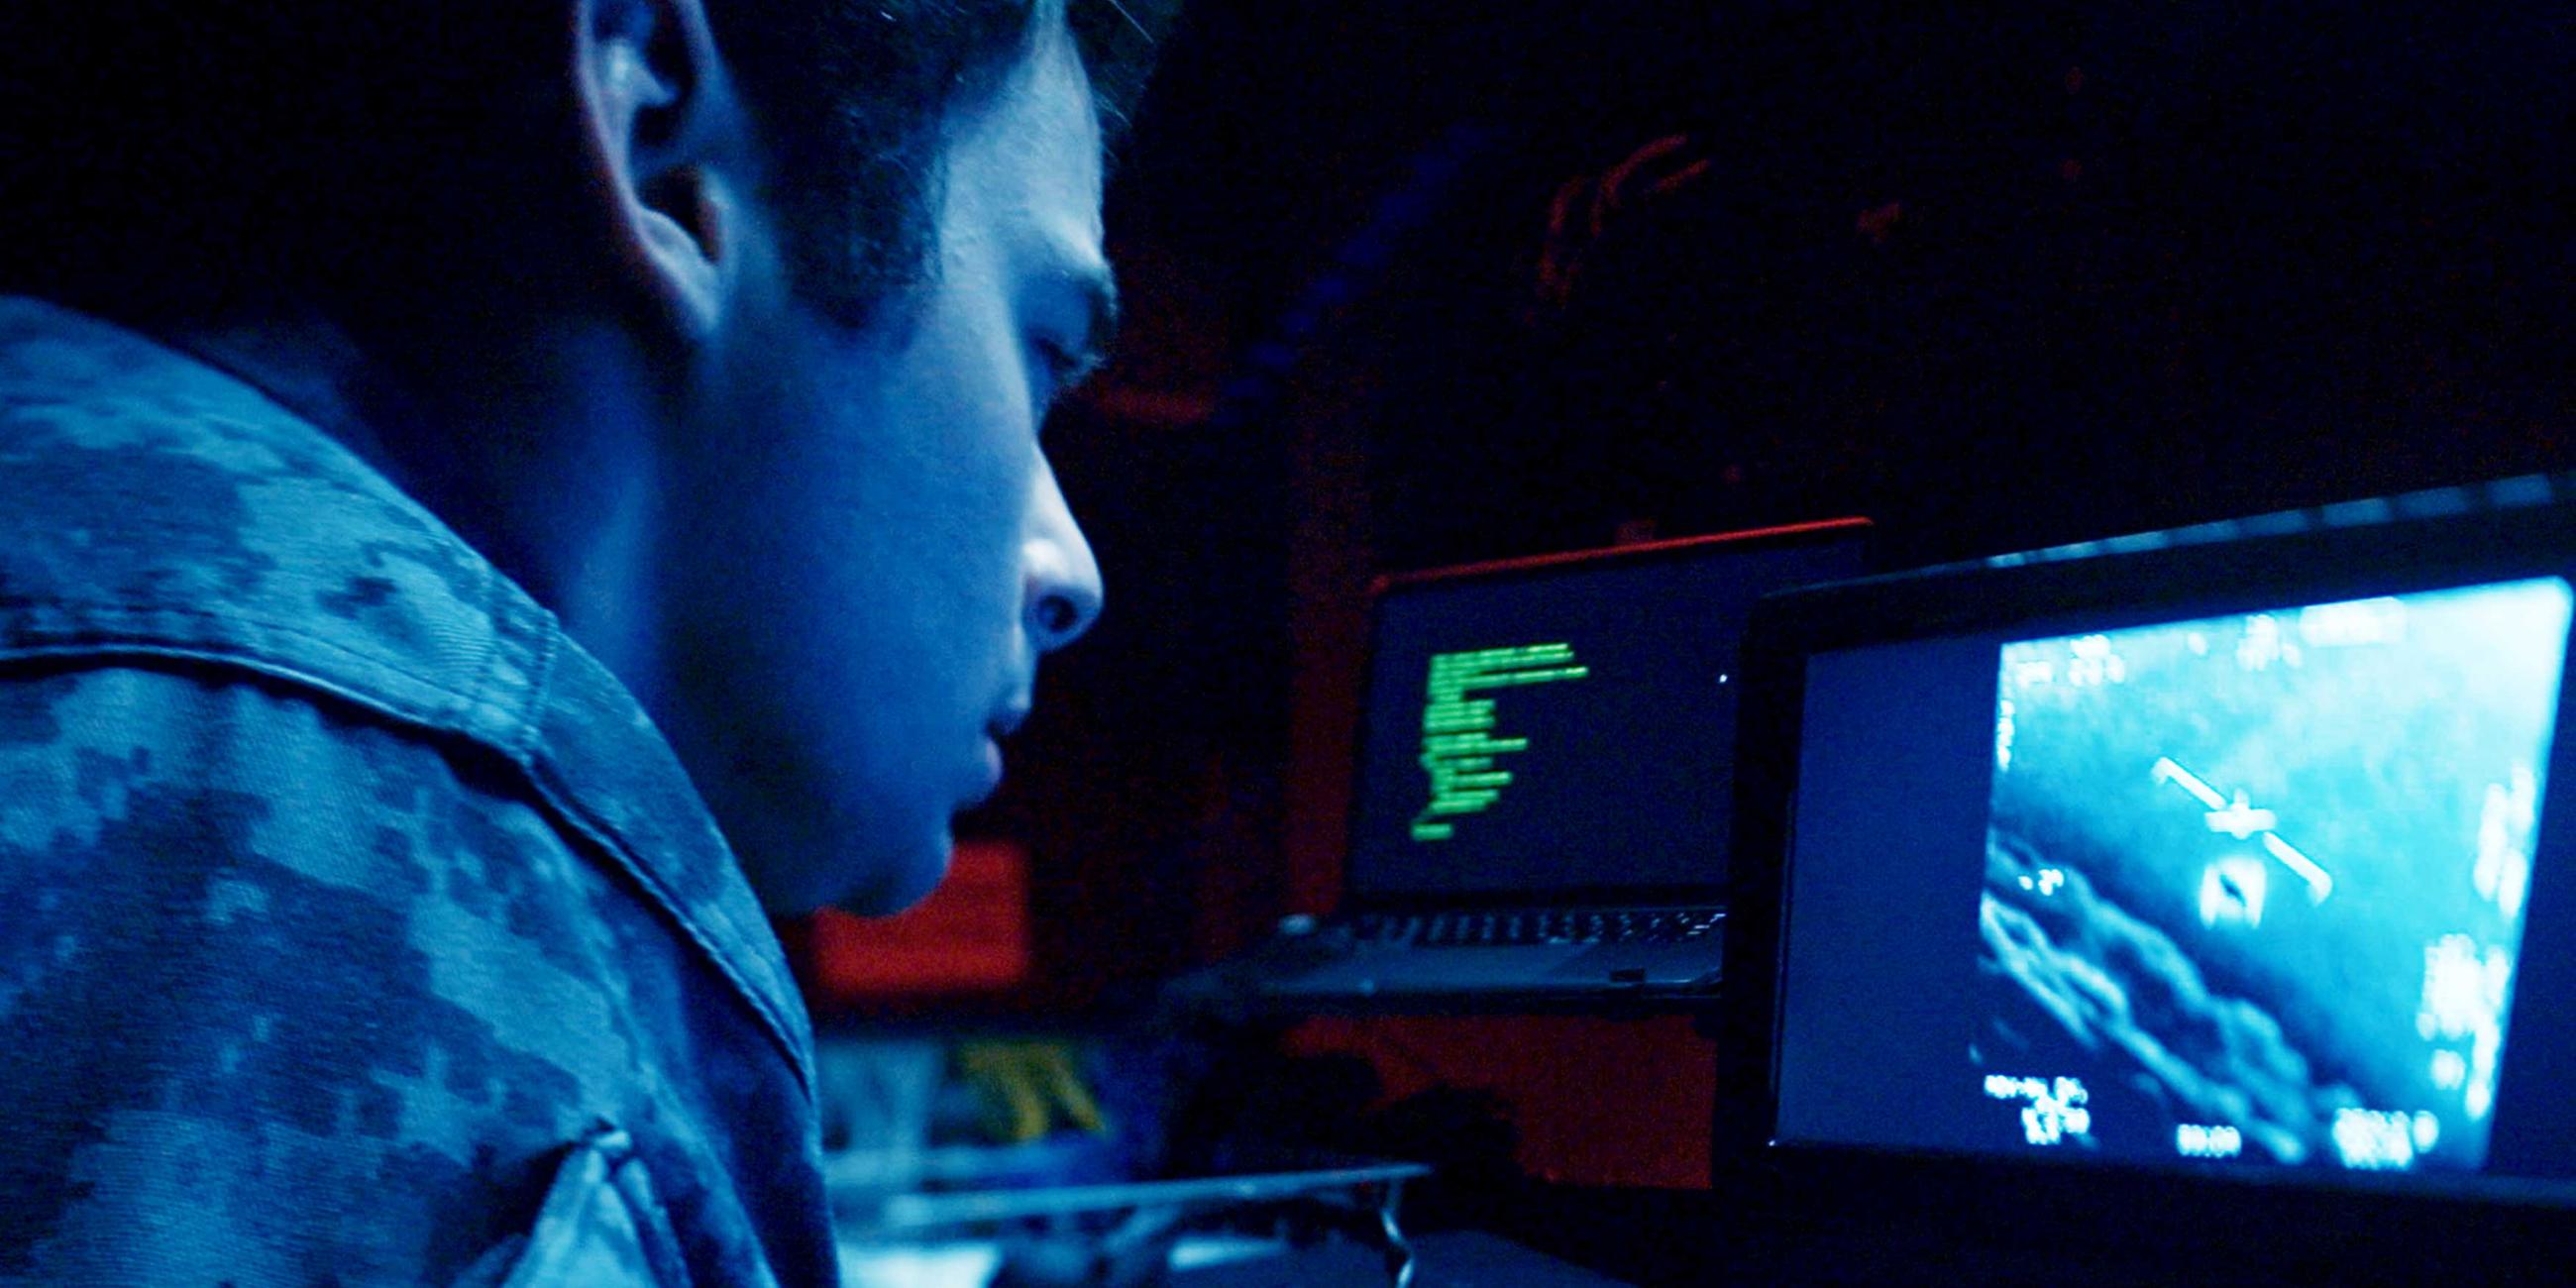  Ein Mann in Uniform schaut auf das Display eines Computers.